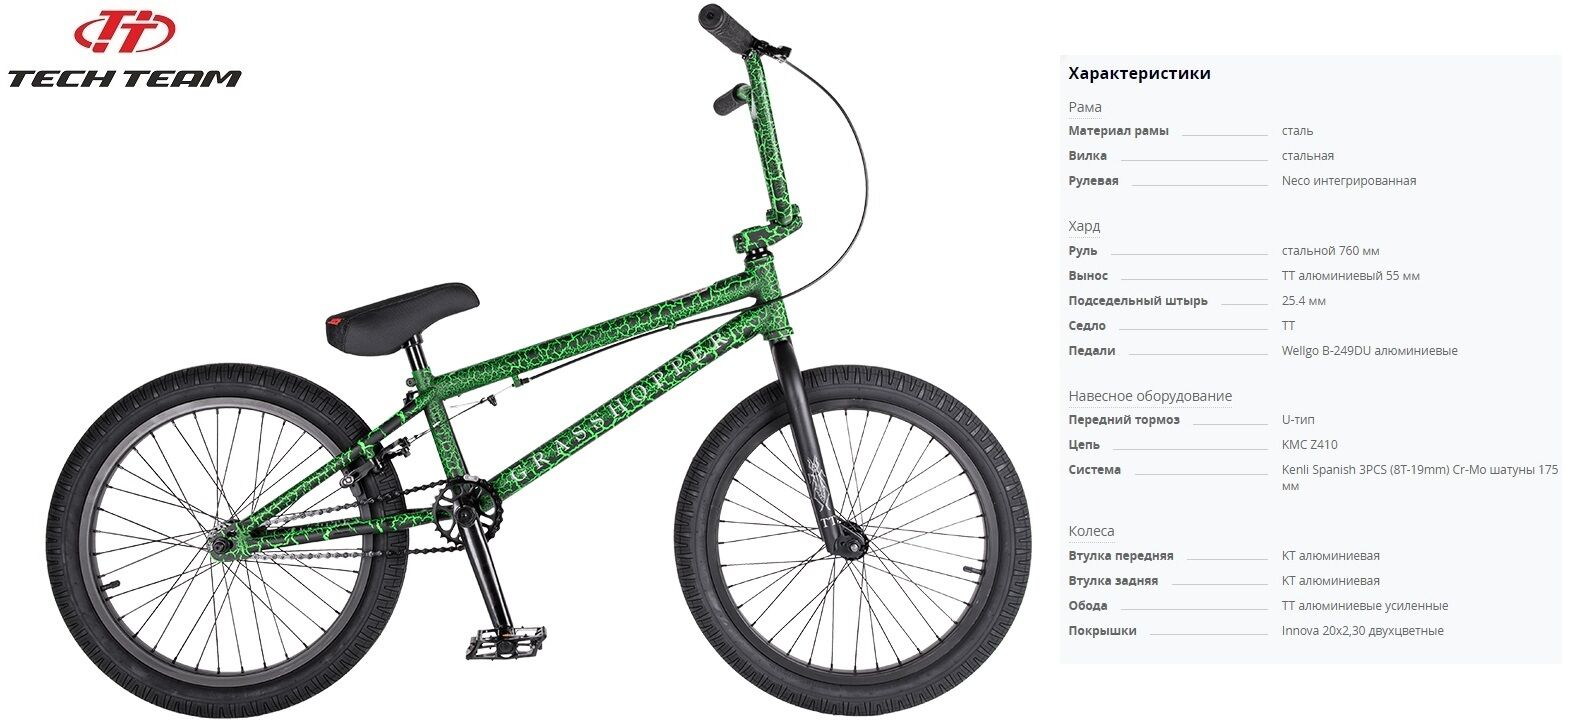 Фото выбрать и купить велосипед велосипед tech team grasshoper (bmx 20", 1 ск.) (зеленый, nn007197) со склада в СПб - большой выбор для взрослого и для детей, велосипед tech team grasshoper (bmx 20", 1 ск.) (зеленый, nn007197) велосипеды для трюков стрит или дерт в наличии - интернет-магазин Мастерская Тимура